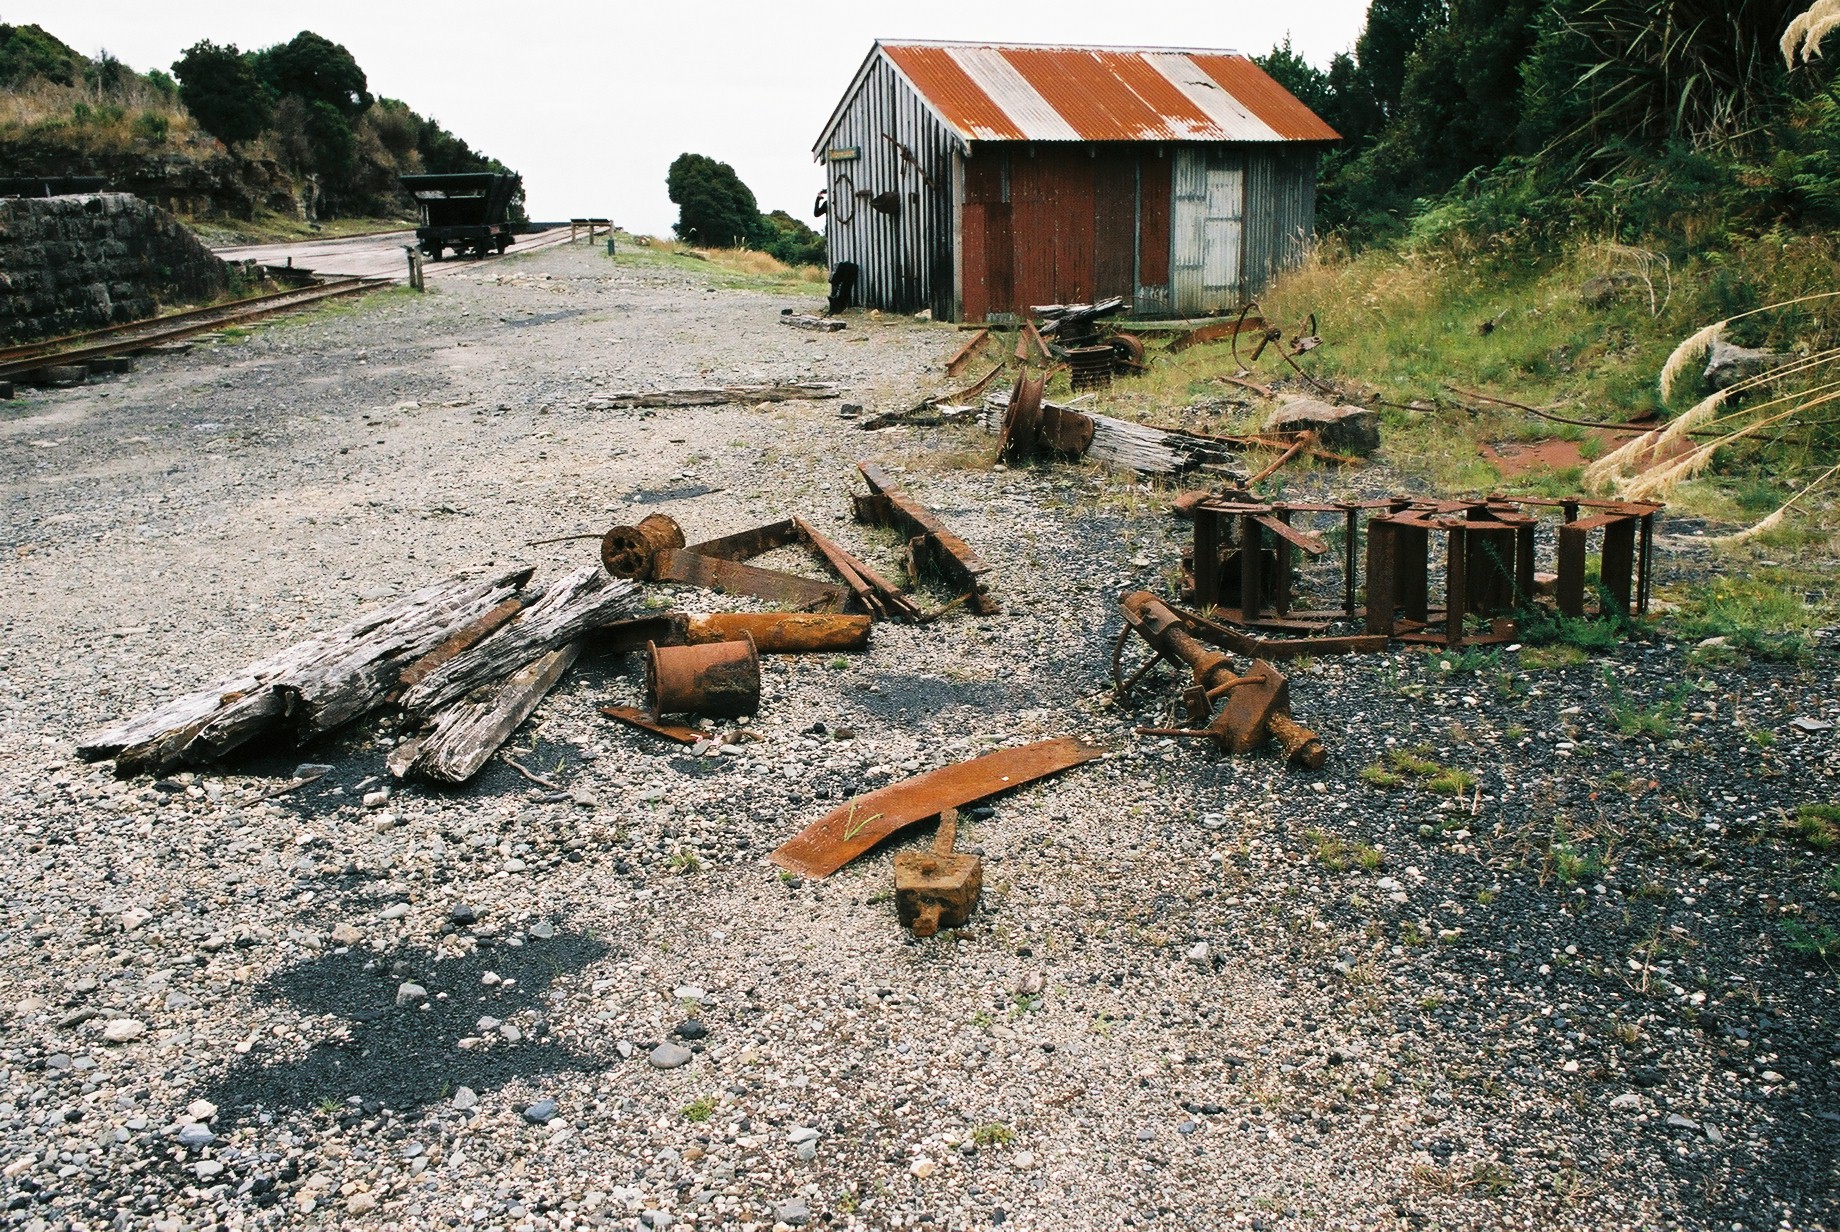 fotka / image Jin Ostrov, color negatives, New Zealand